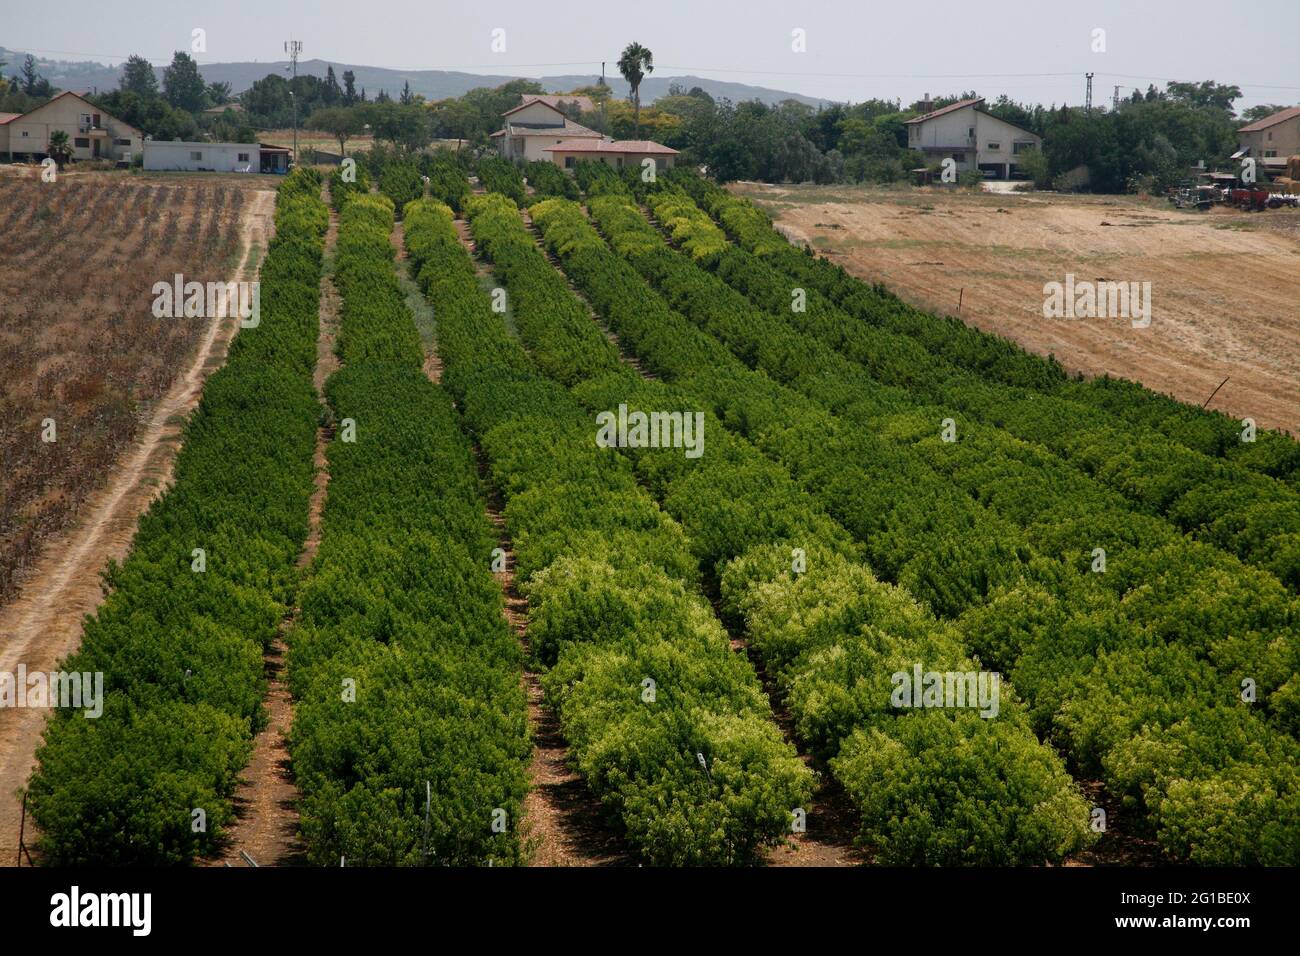 Obstgarten mit Nectarine-Bäumen, Lower Shephelah Hills, Lowlands oder Judäischen Ausläufern in der Nähe des Dorfes Kfar Shmuel, Israel Stockfoto